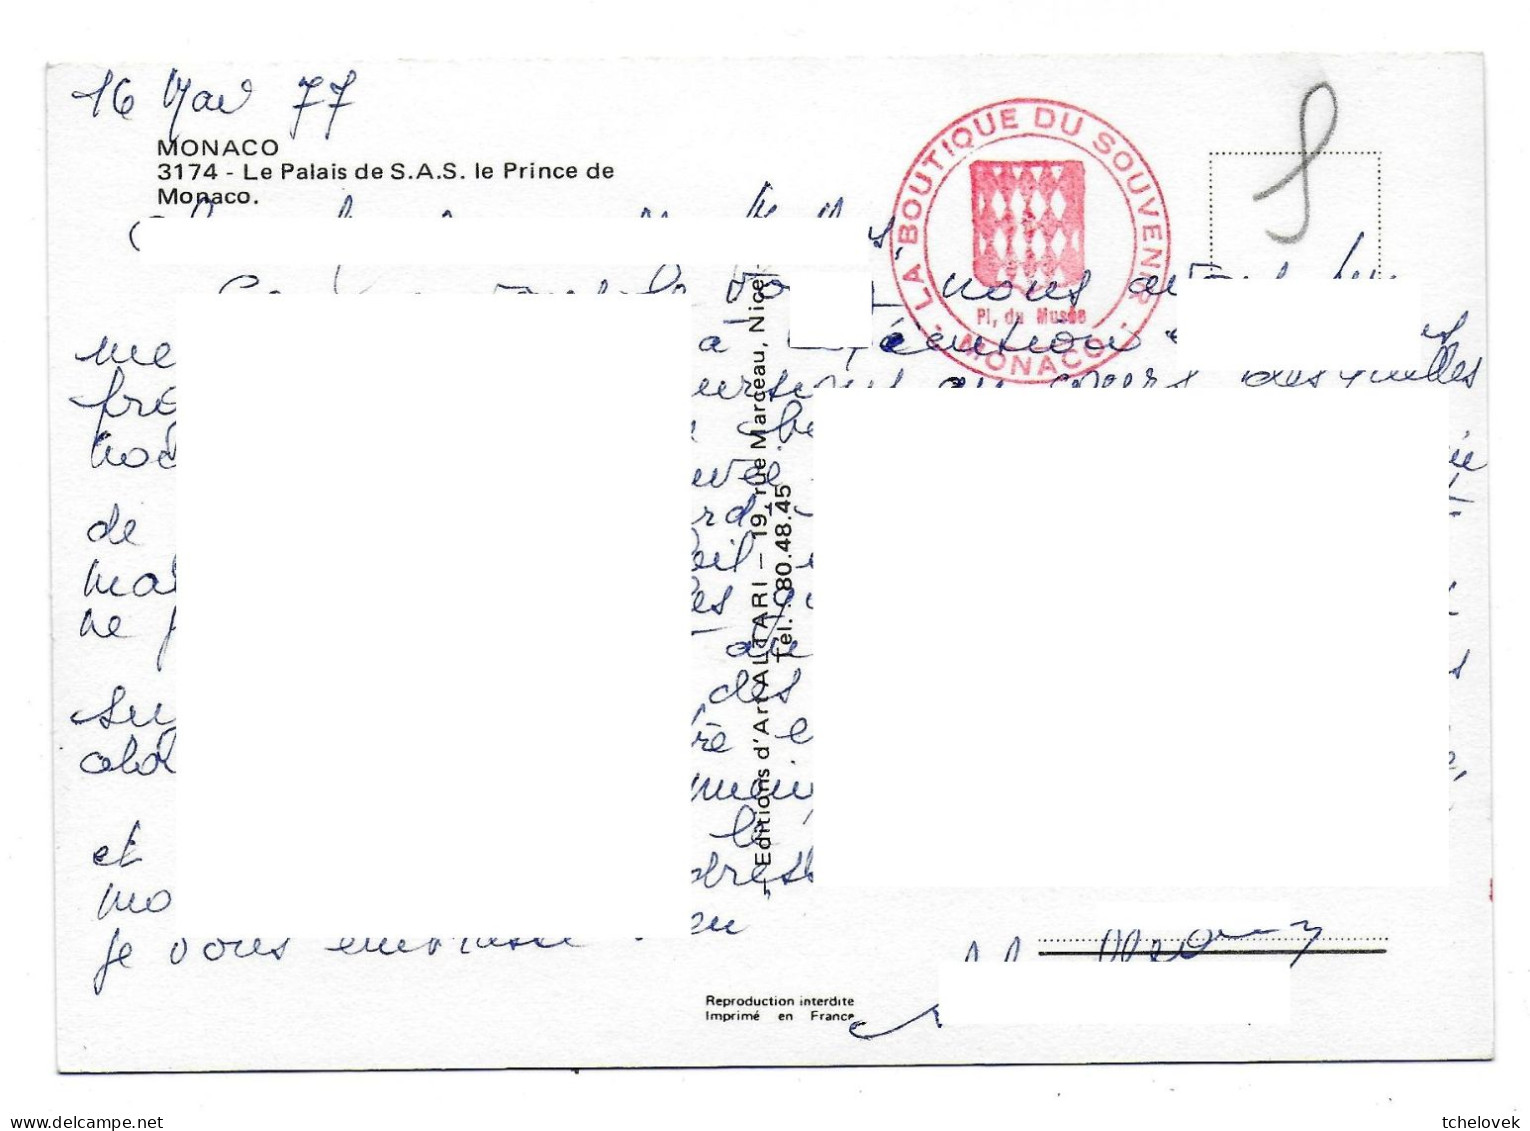 Monaco. 2799 Le Rocher 1954 & 3174 Le Palais 1977 - Giardino Esotico